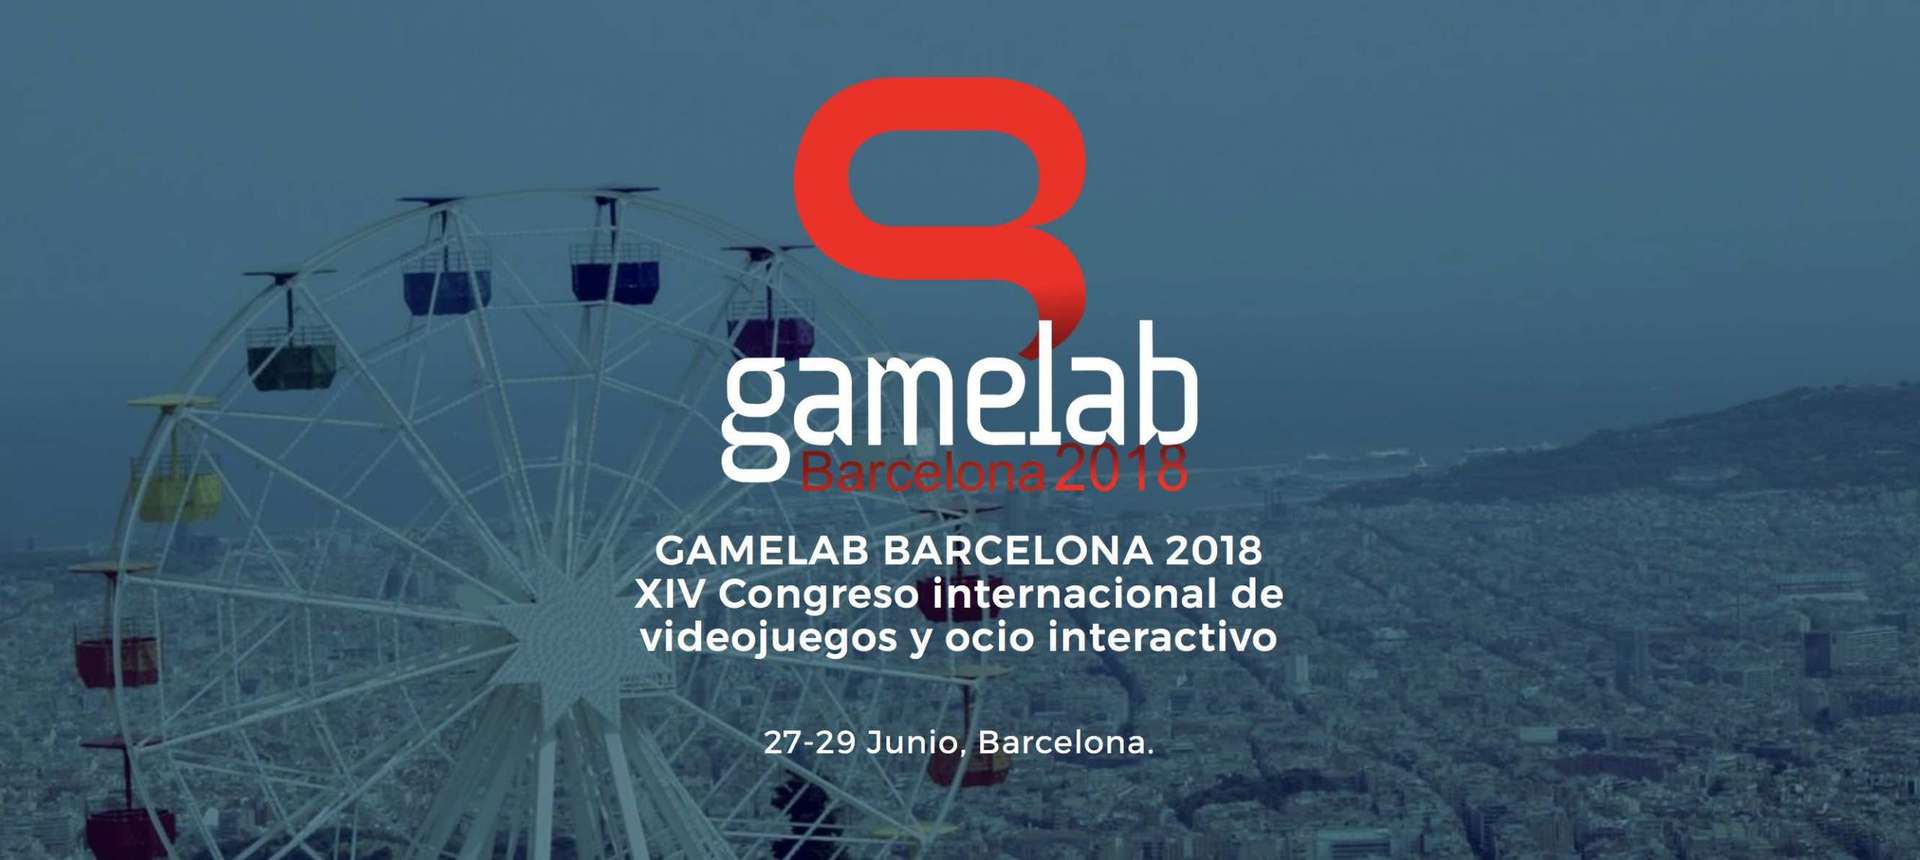 La Gamelab 2018 se celebrará los días 27 a 29 de junio